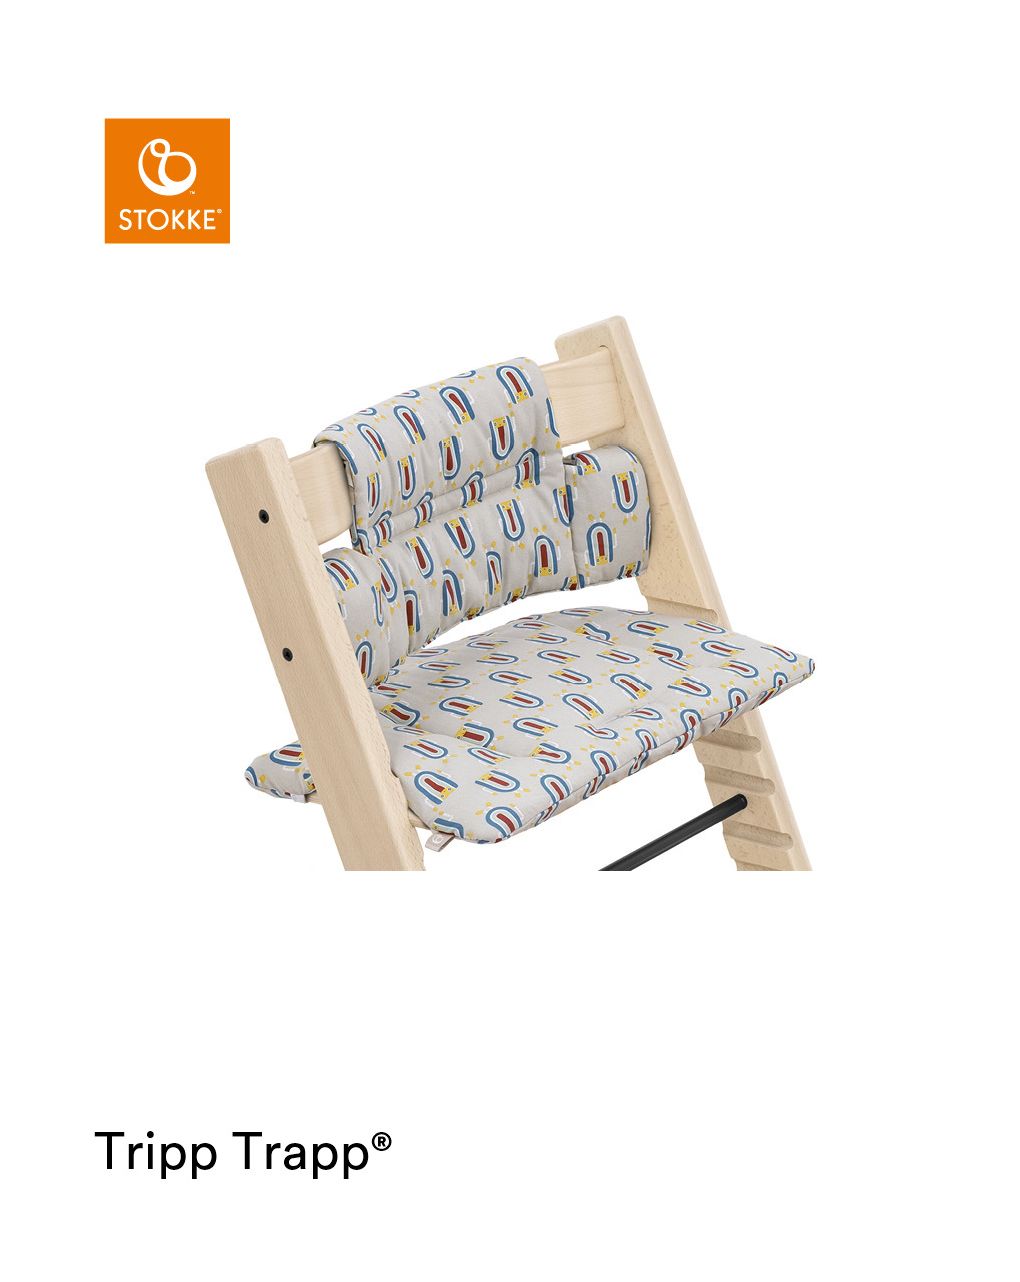 Tripp trapp® classic cushion robot grey ocs
cuscino per seggiolone, morbido e avvolgente per il tuo bambino - Stokke